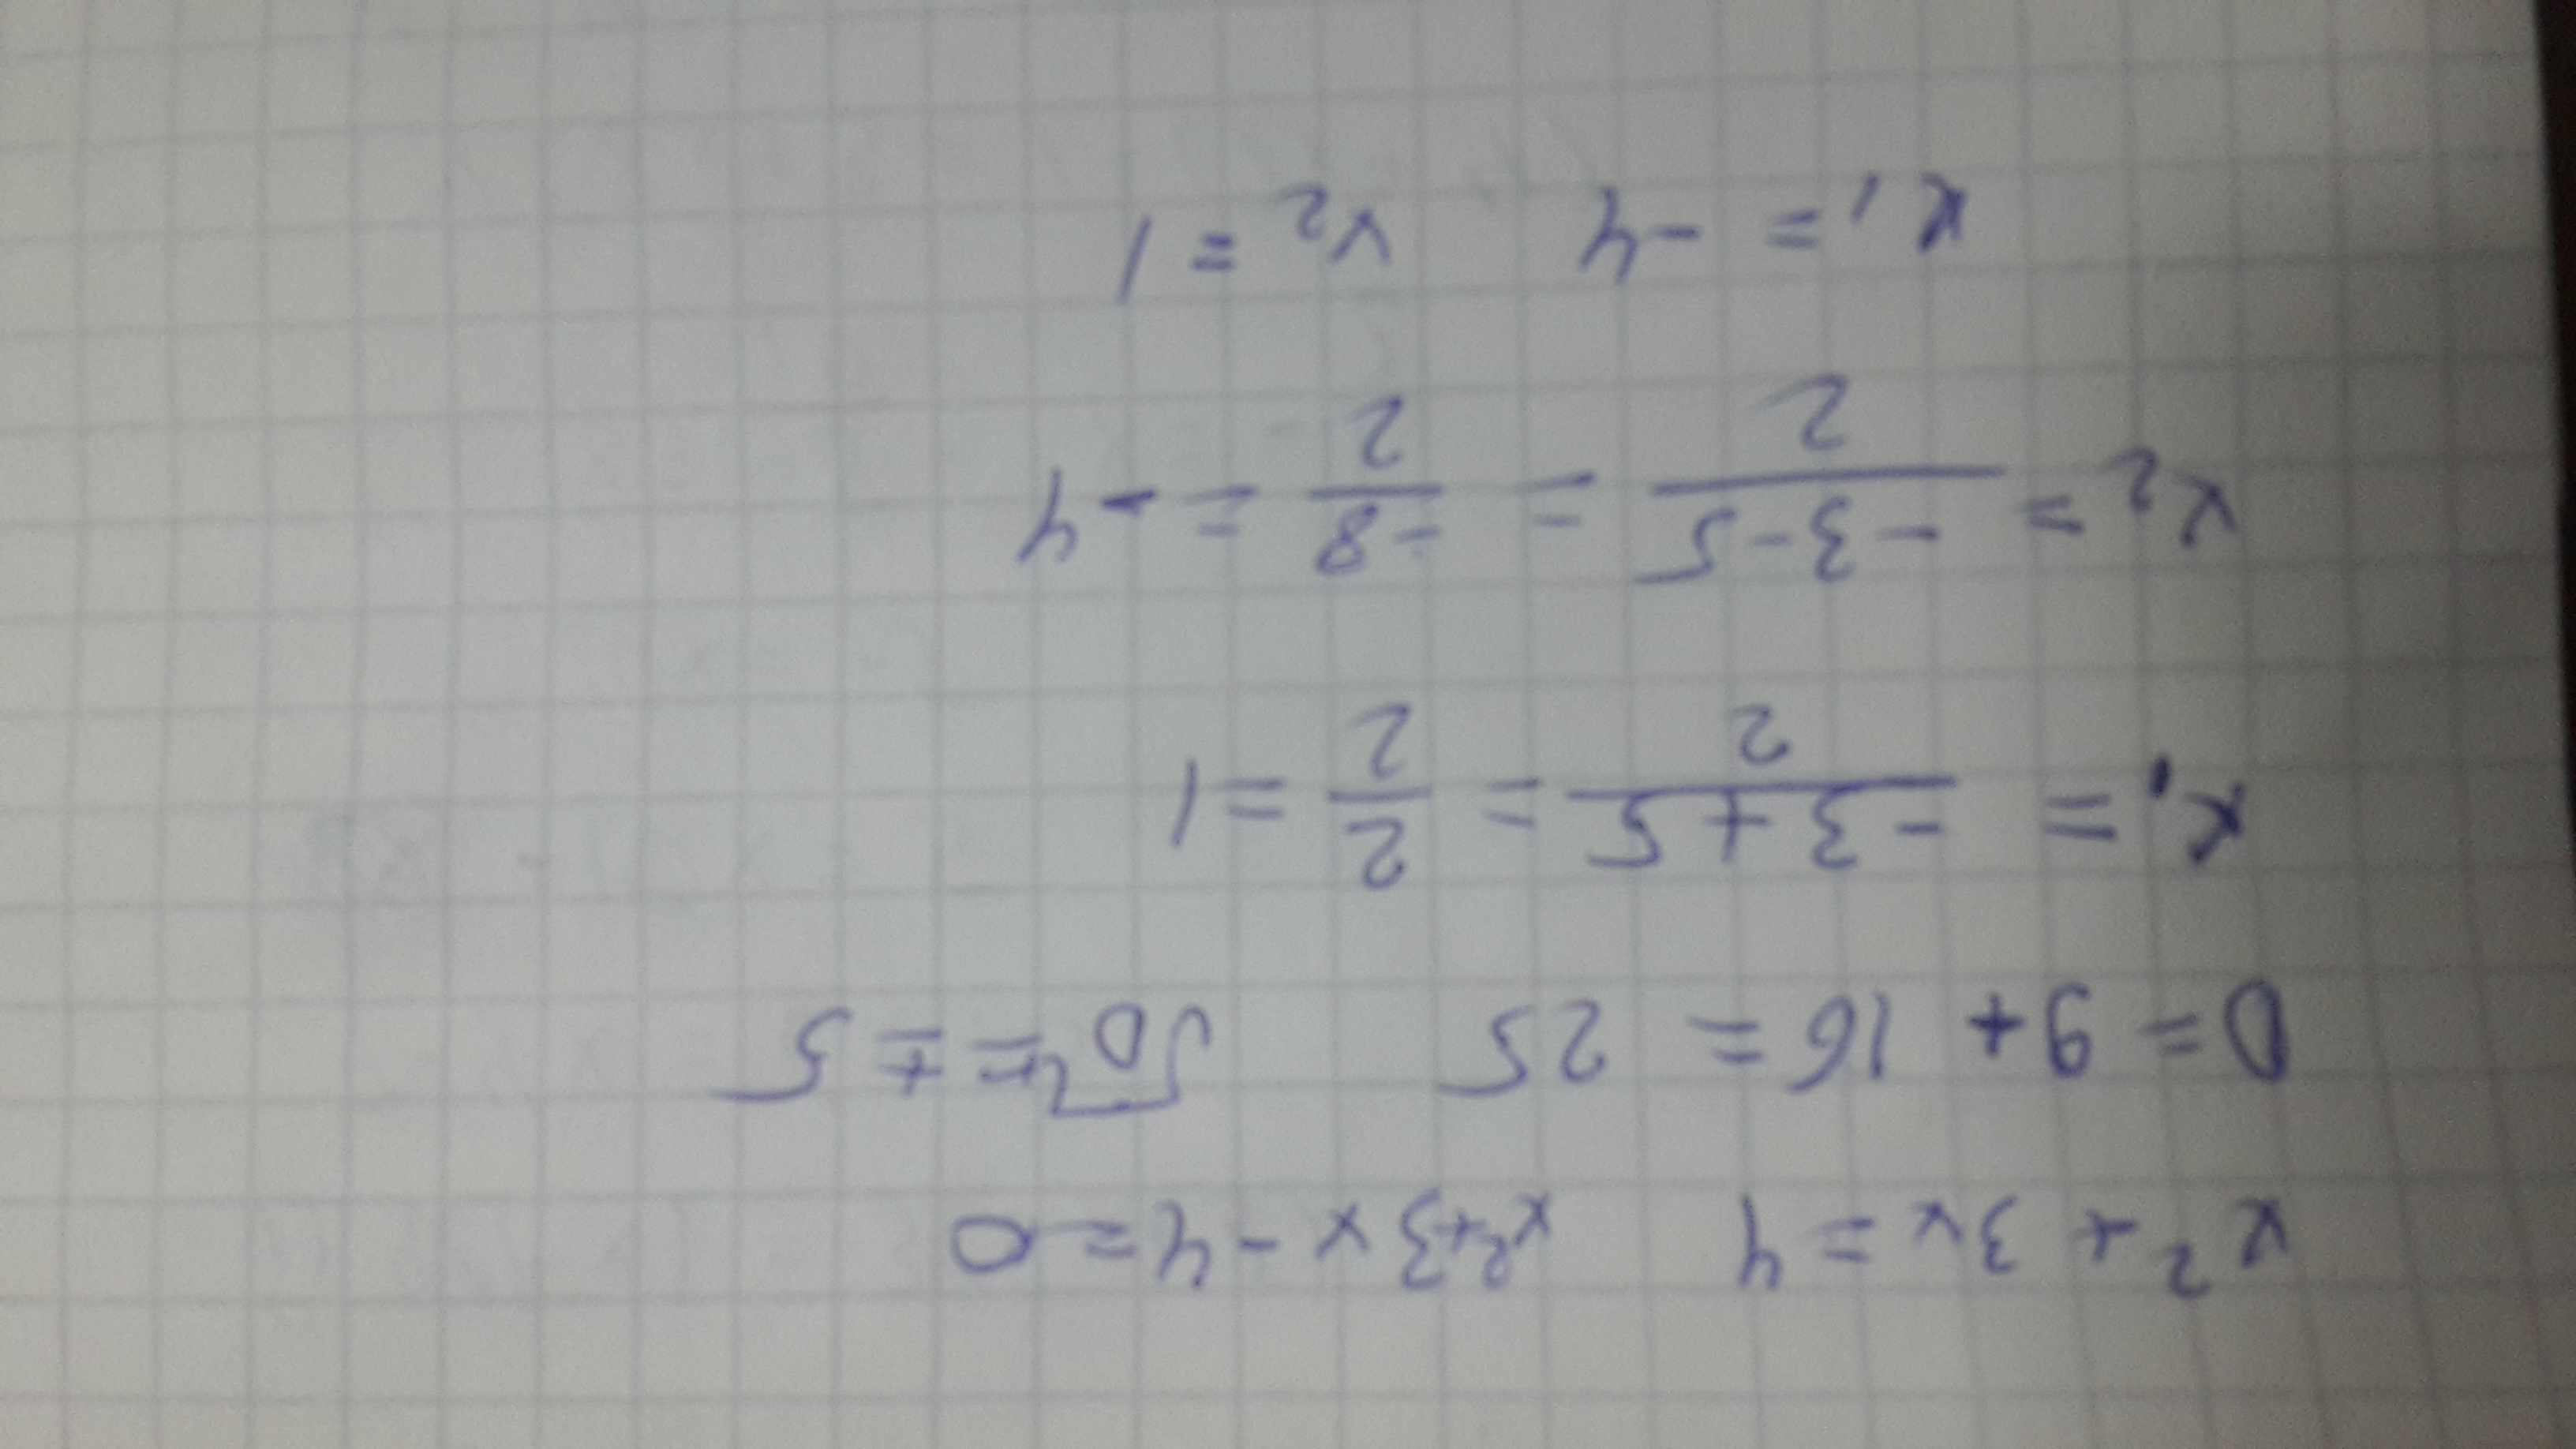 X2 x3 если x 3. Решение уравнения (8x+x)*4=592. Решите уравнения и запишите корни в порядке возрастания. Запишите корни в порядке возрастания через точку с запятой.